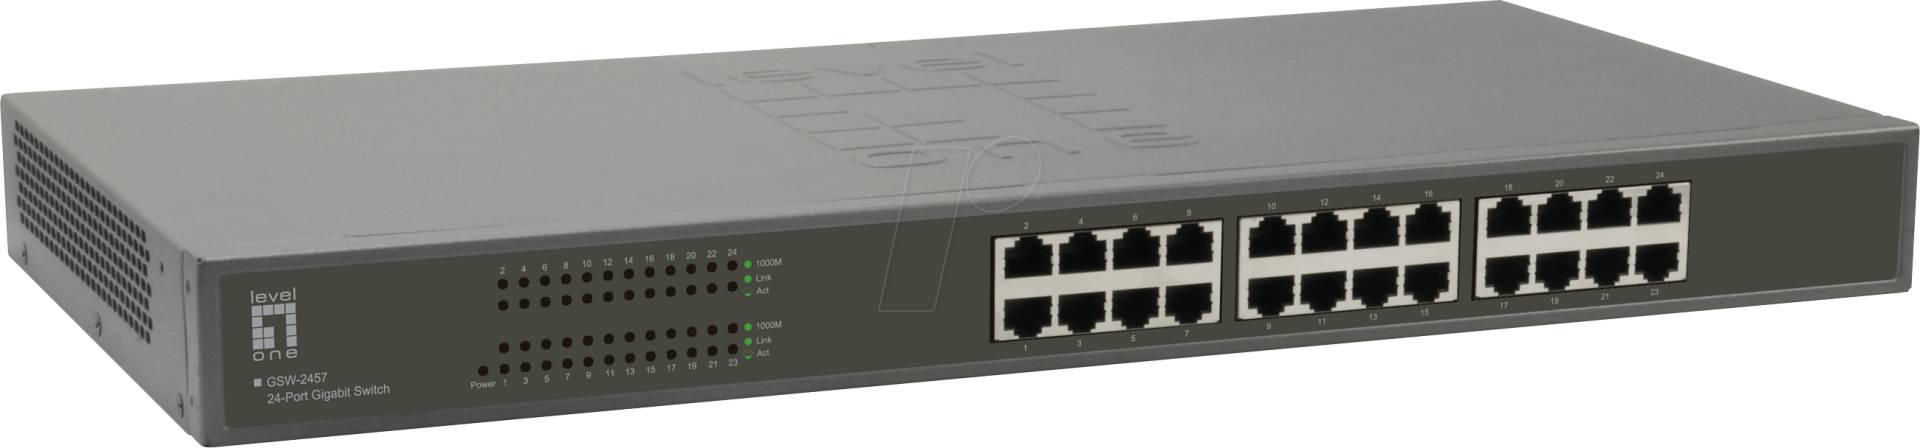 LEVELONE GSW2457 - Switch, 24-Port, Gigabit Ethernet von LevelOne